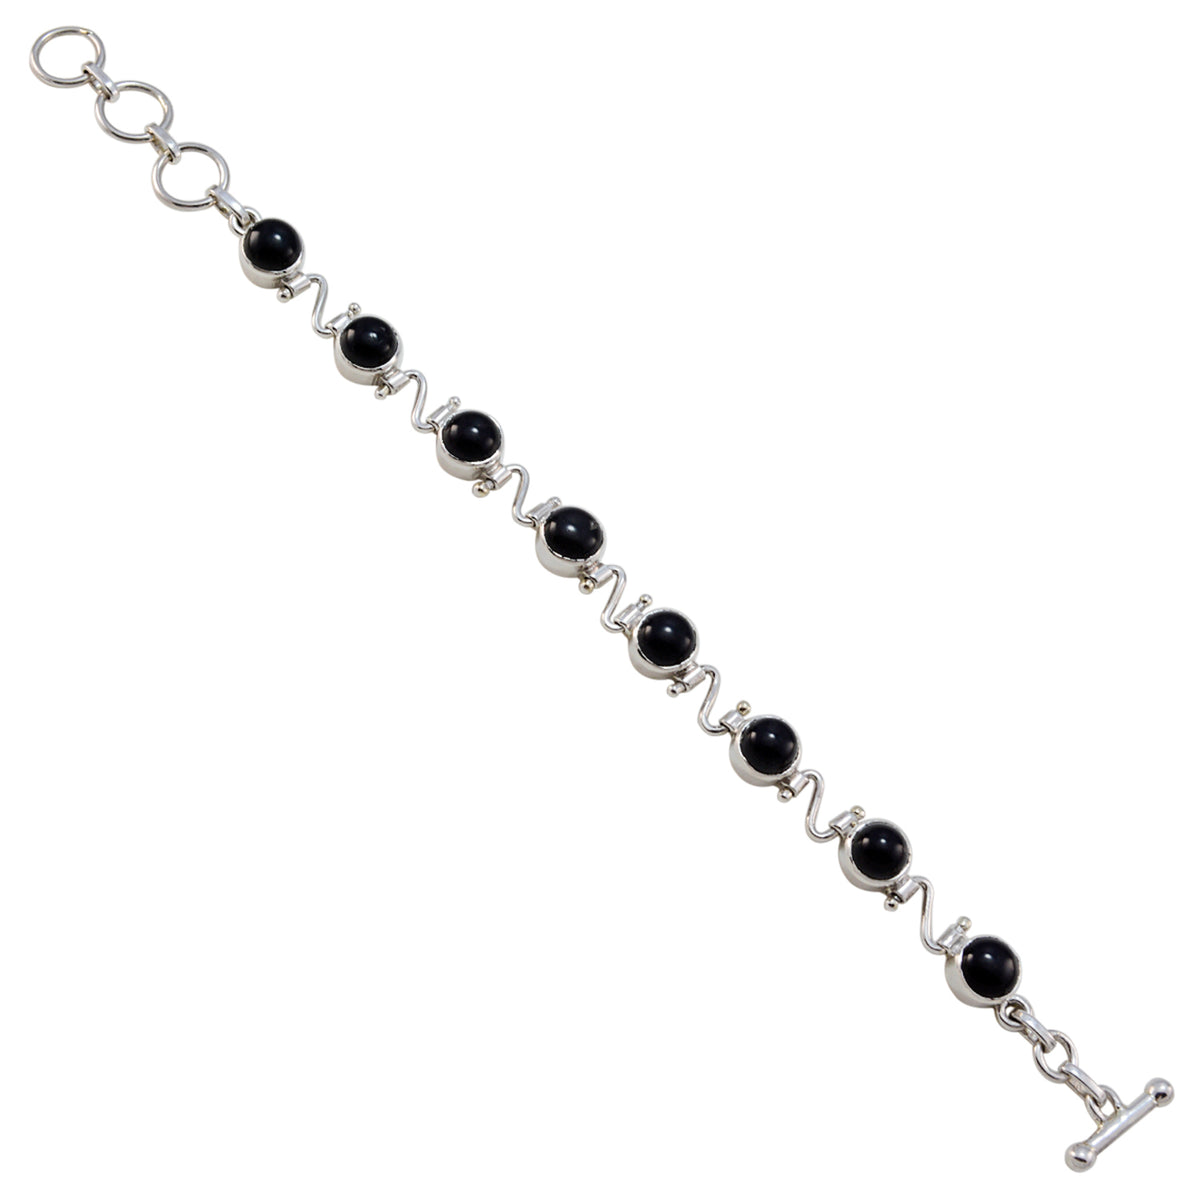 Riyo Real Gemstones Round Cabochon Black Black Onyx Silver Bracelet gift for valentine's day